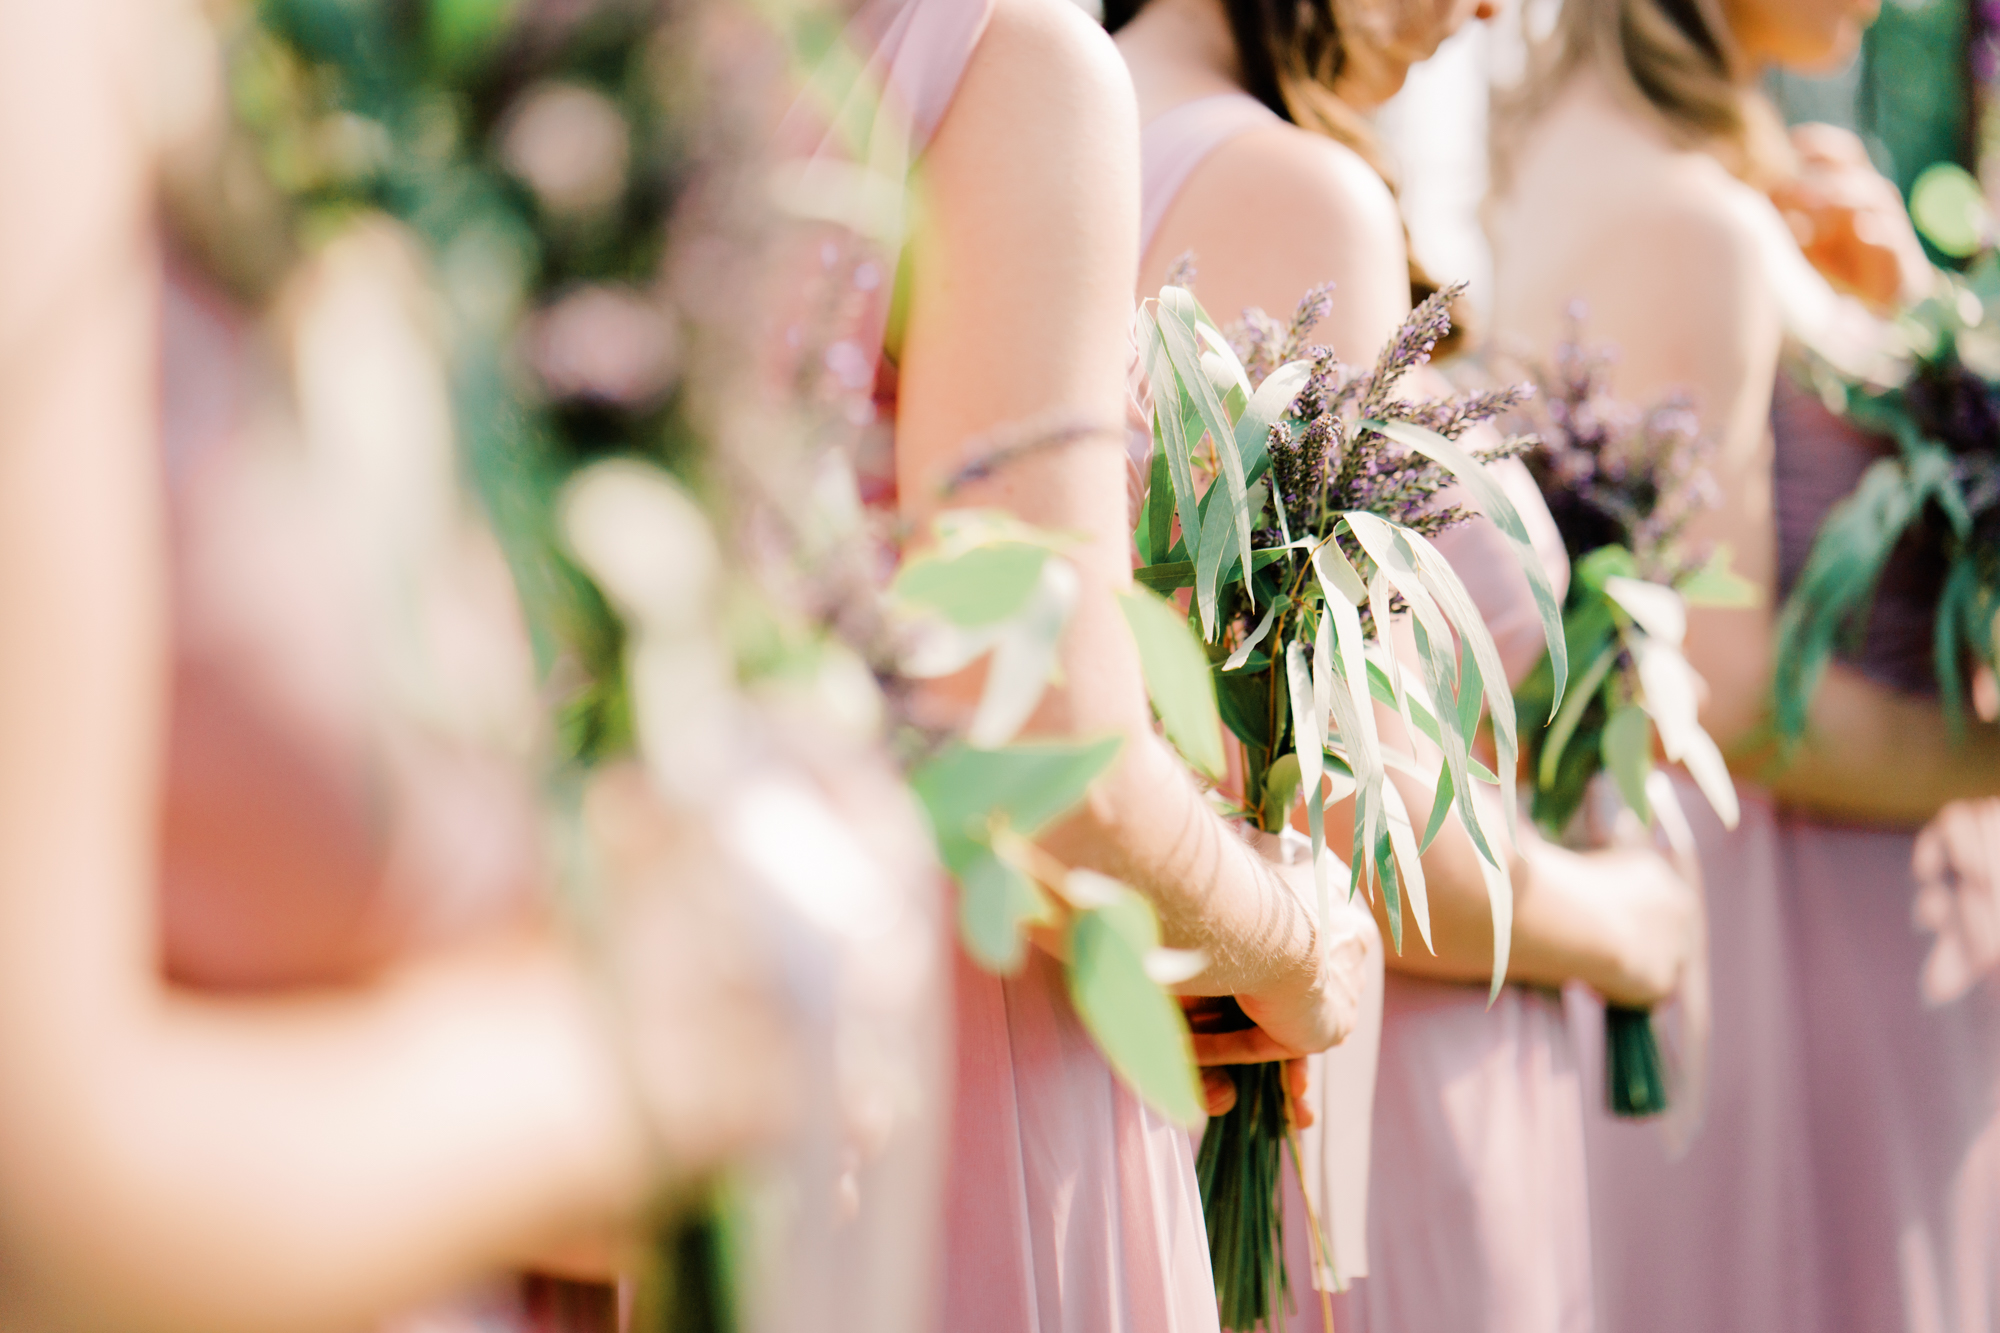 Woodinville Lavender Farm weddings: Bridesmaids bouquets by Fena Flowers